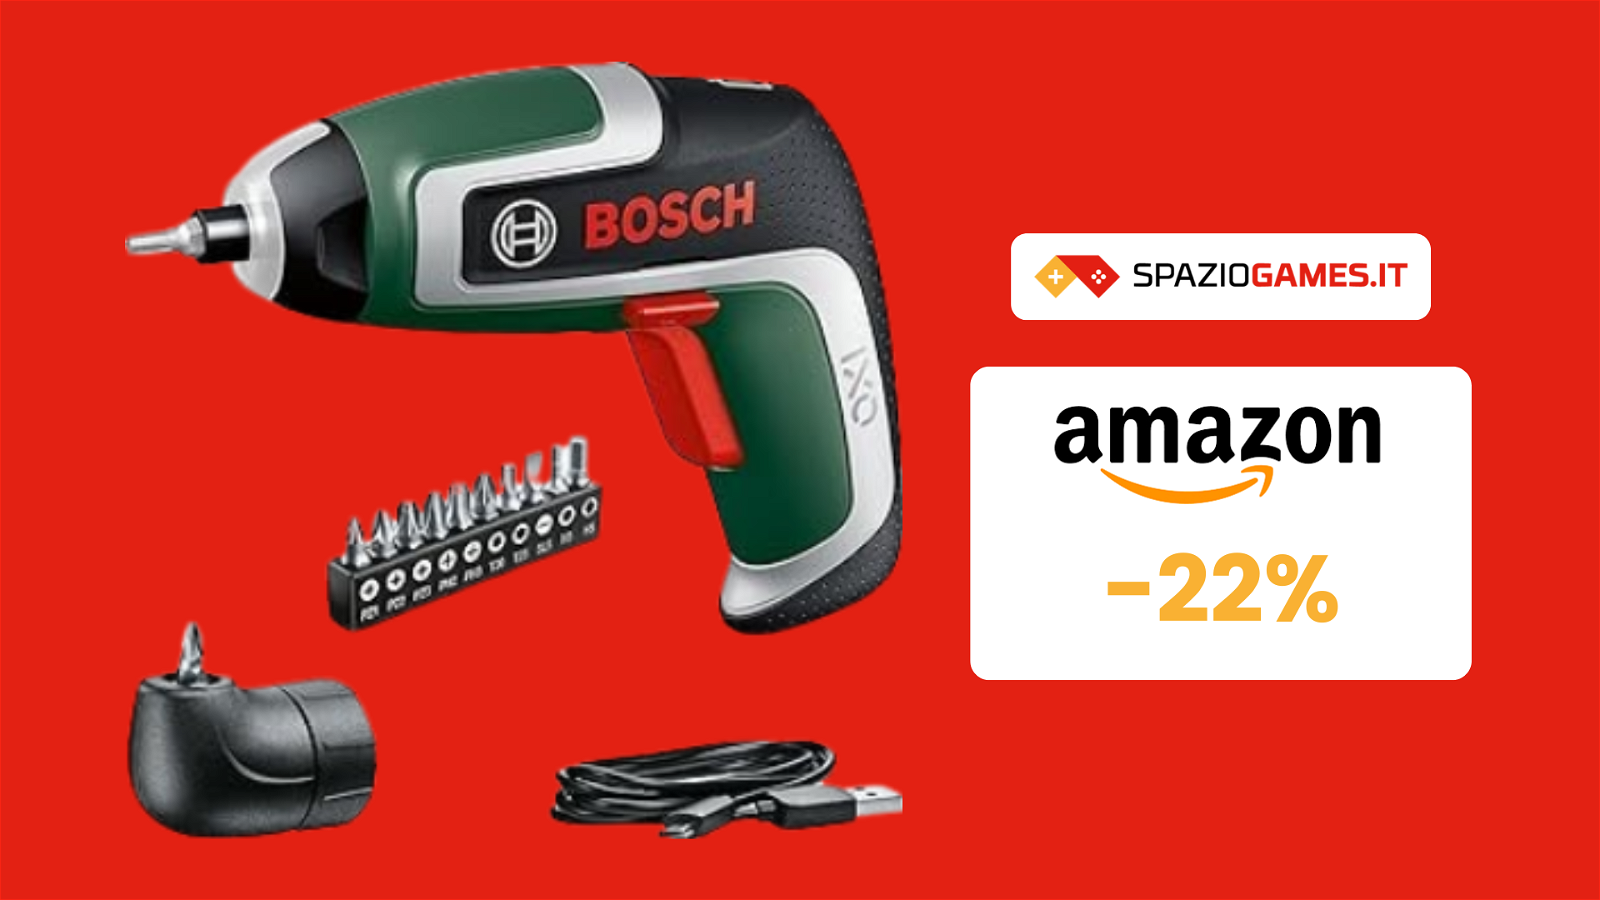 Avvitatore Bosch a 40€: vendutissimo e utilissimo!